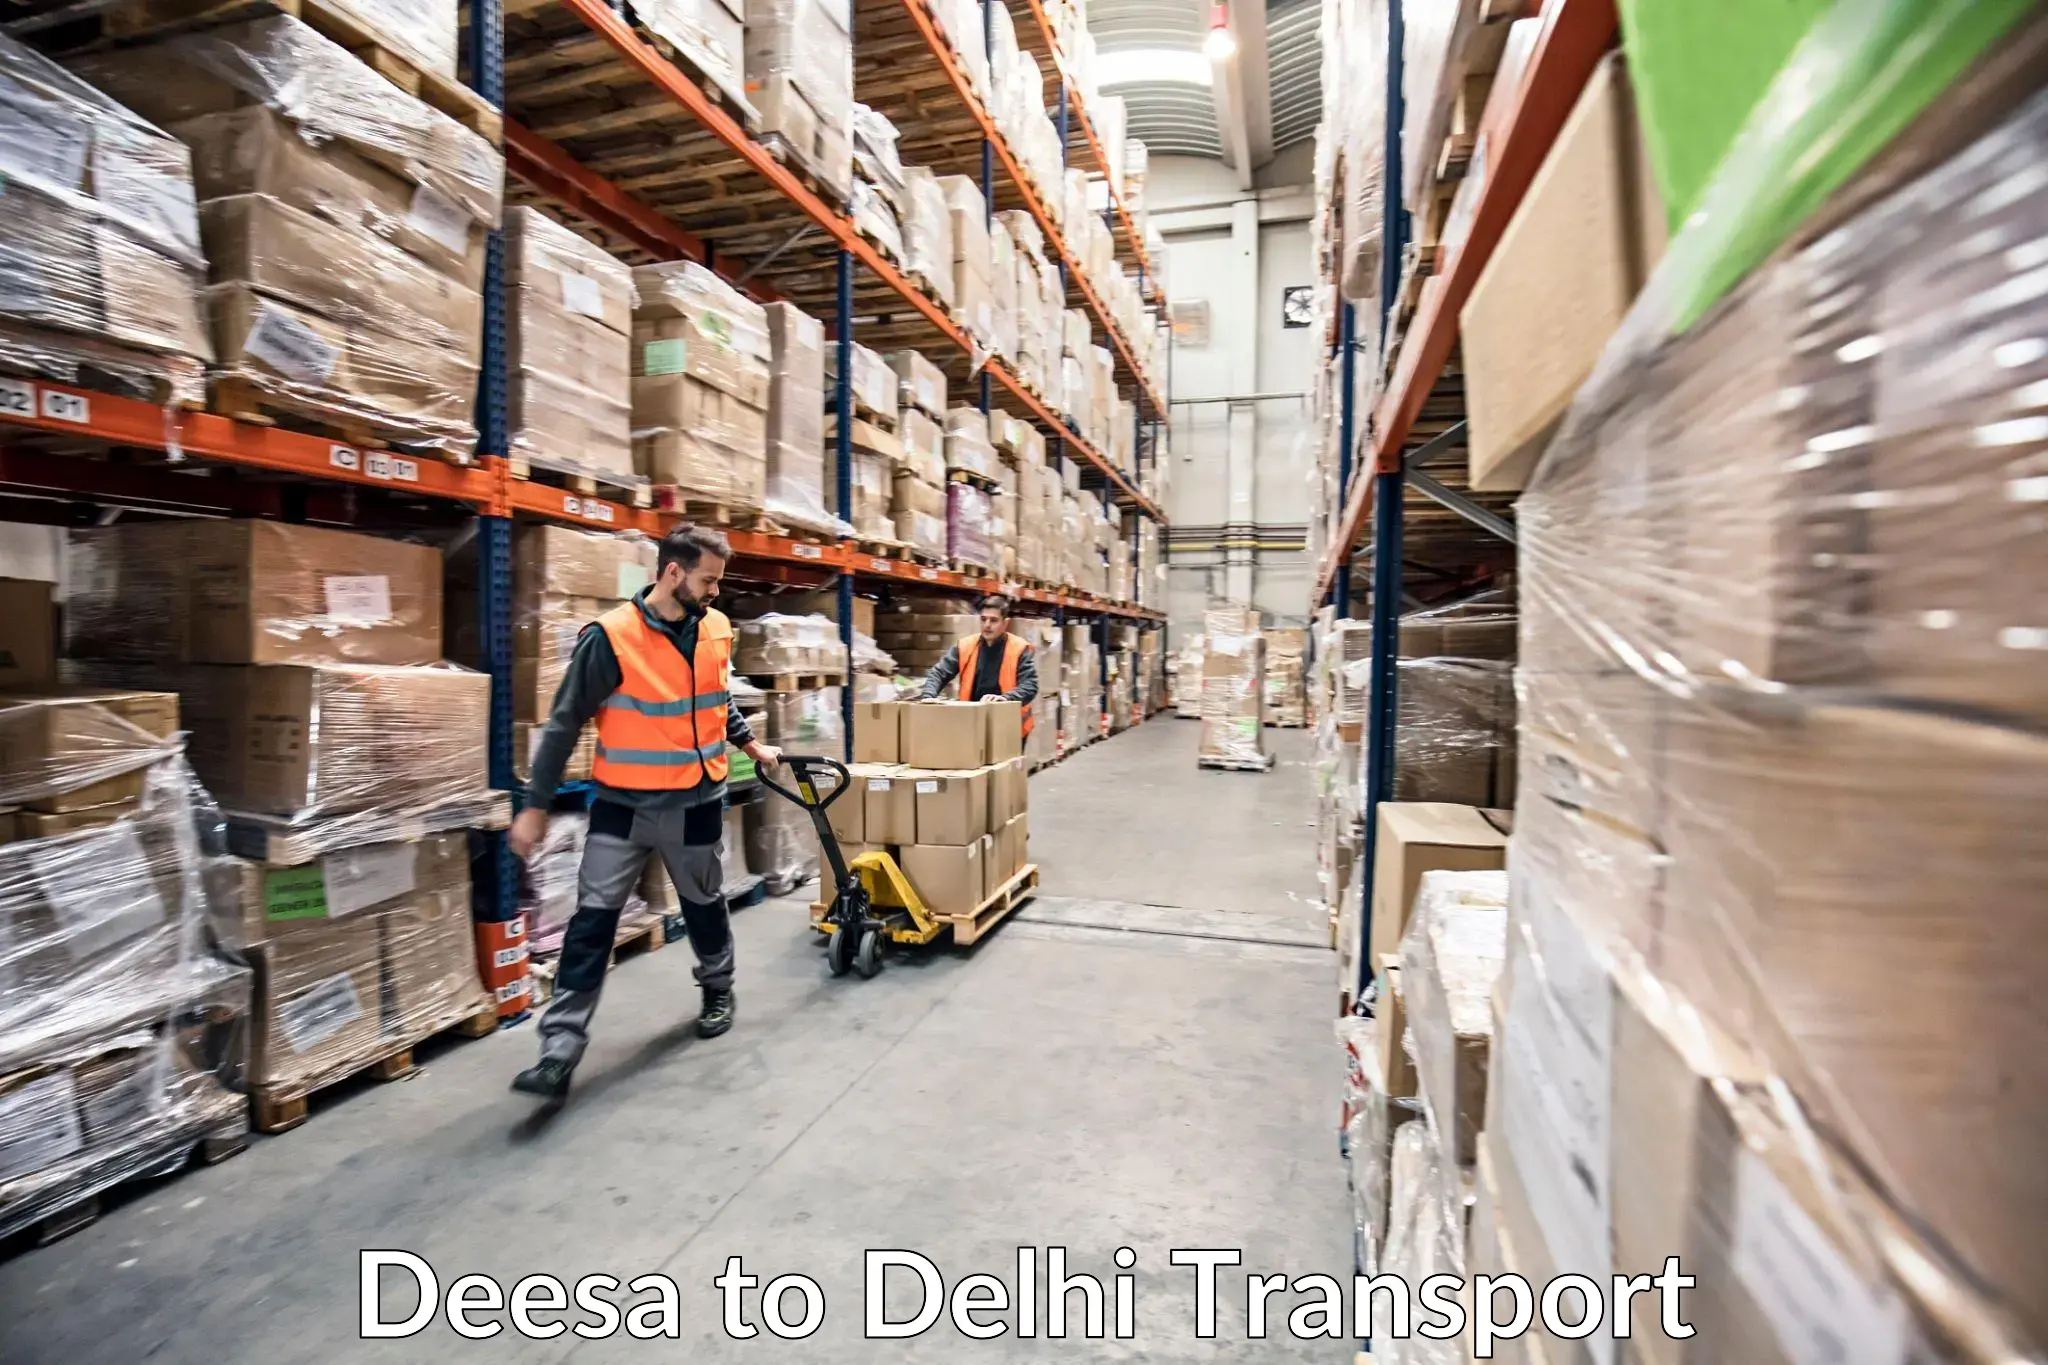 Domestic transport services Deesa to Delhi